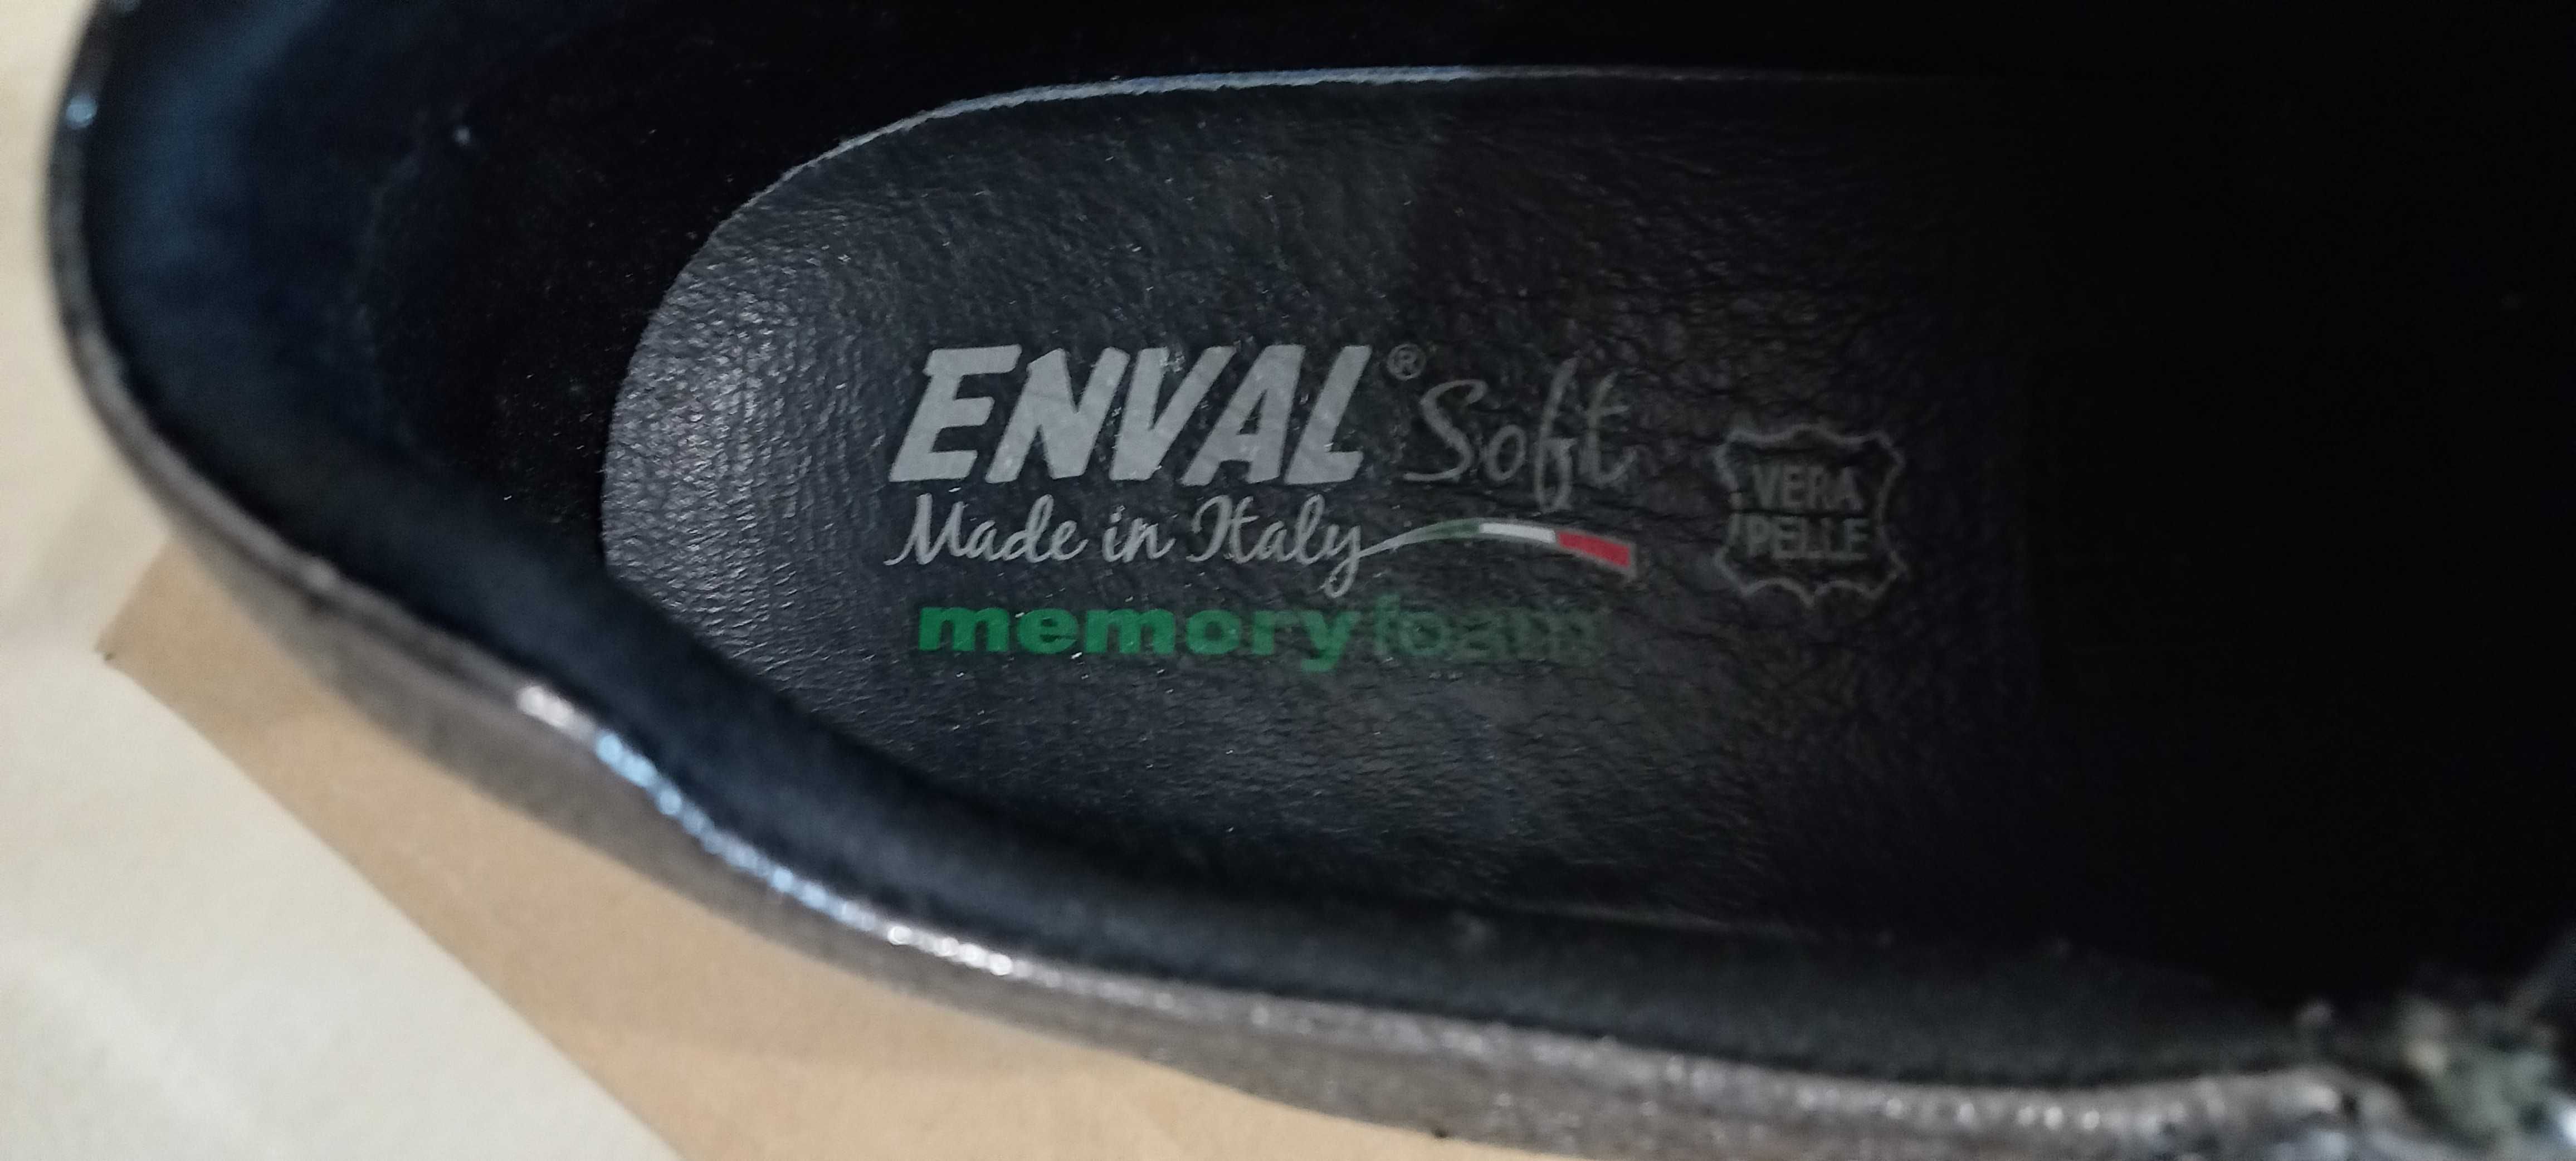 Продам Кросівки без шнурків   мокасини   Enval Soft   Італія